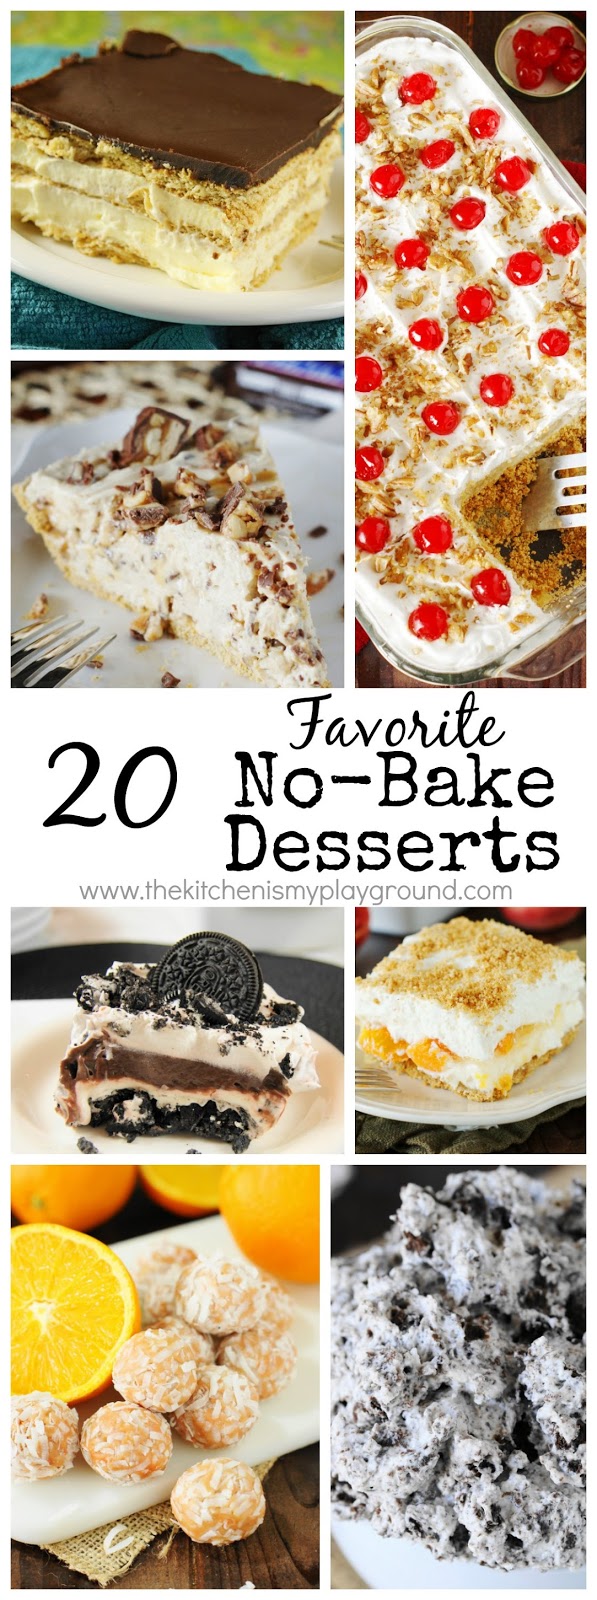 20 Favorite No-Bake Desserts - The Kitchen is My Playground